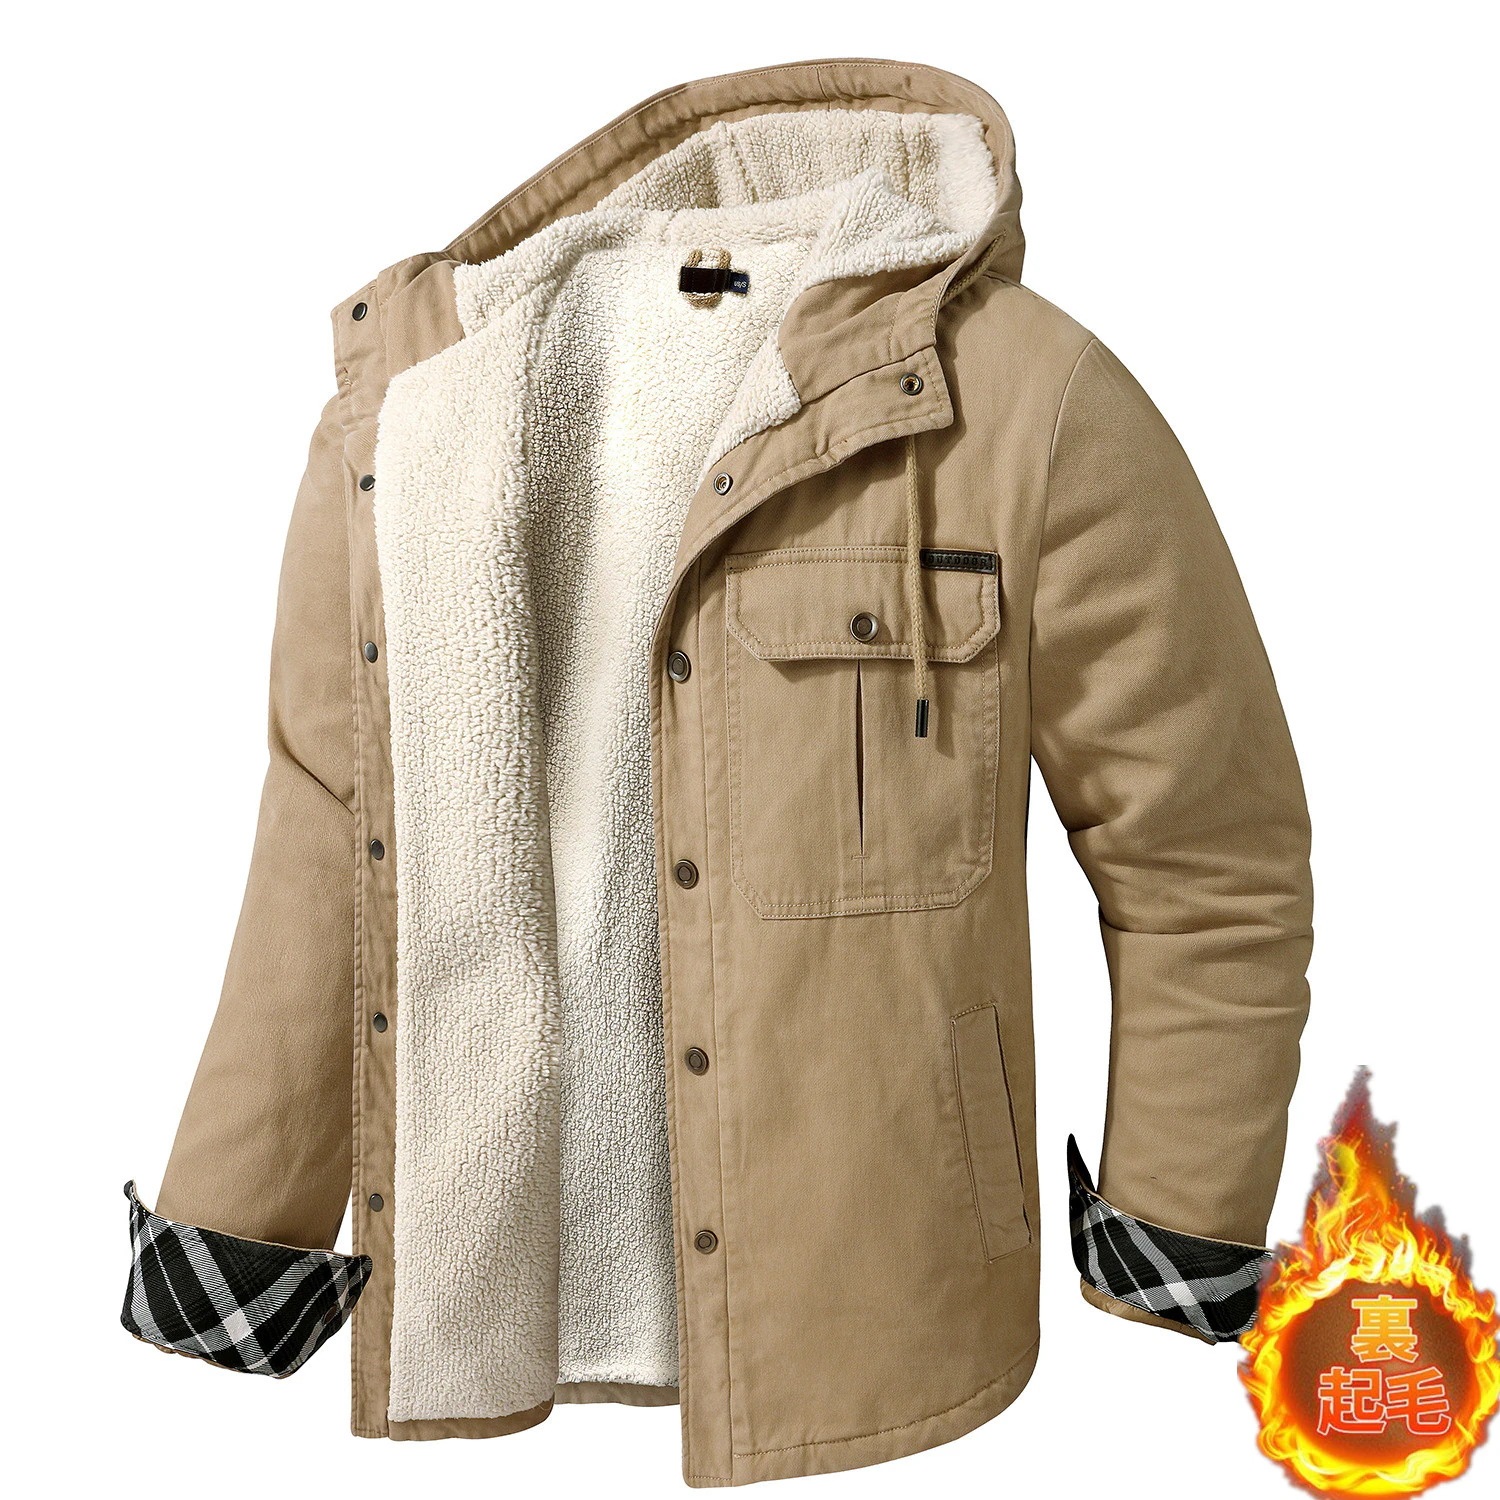 中綿ジャケット メンズ 裏起毛 裏ボア フード付き 中綿ブルゾン ジャケット カジュアル トップス 防寒 保温 暖かい 冬物 防風 アウトドア